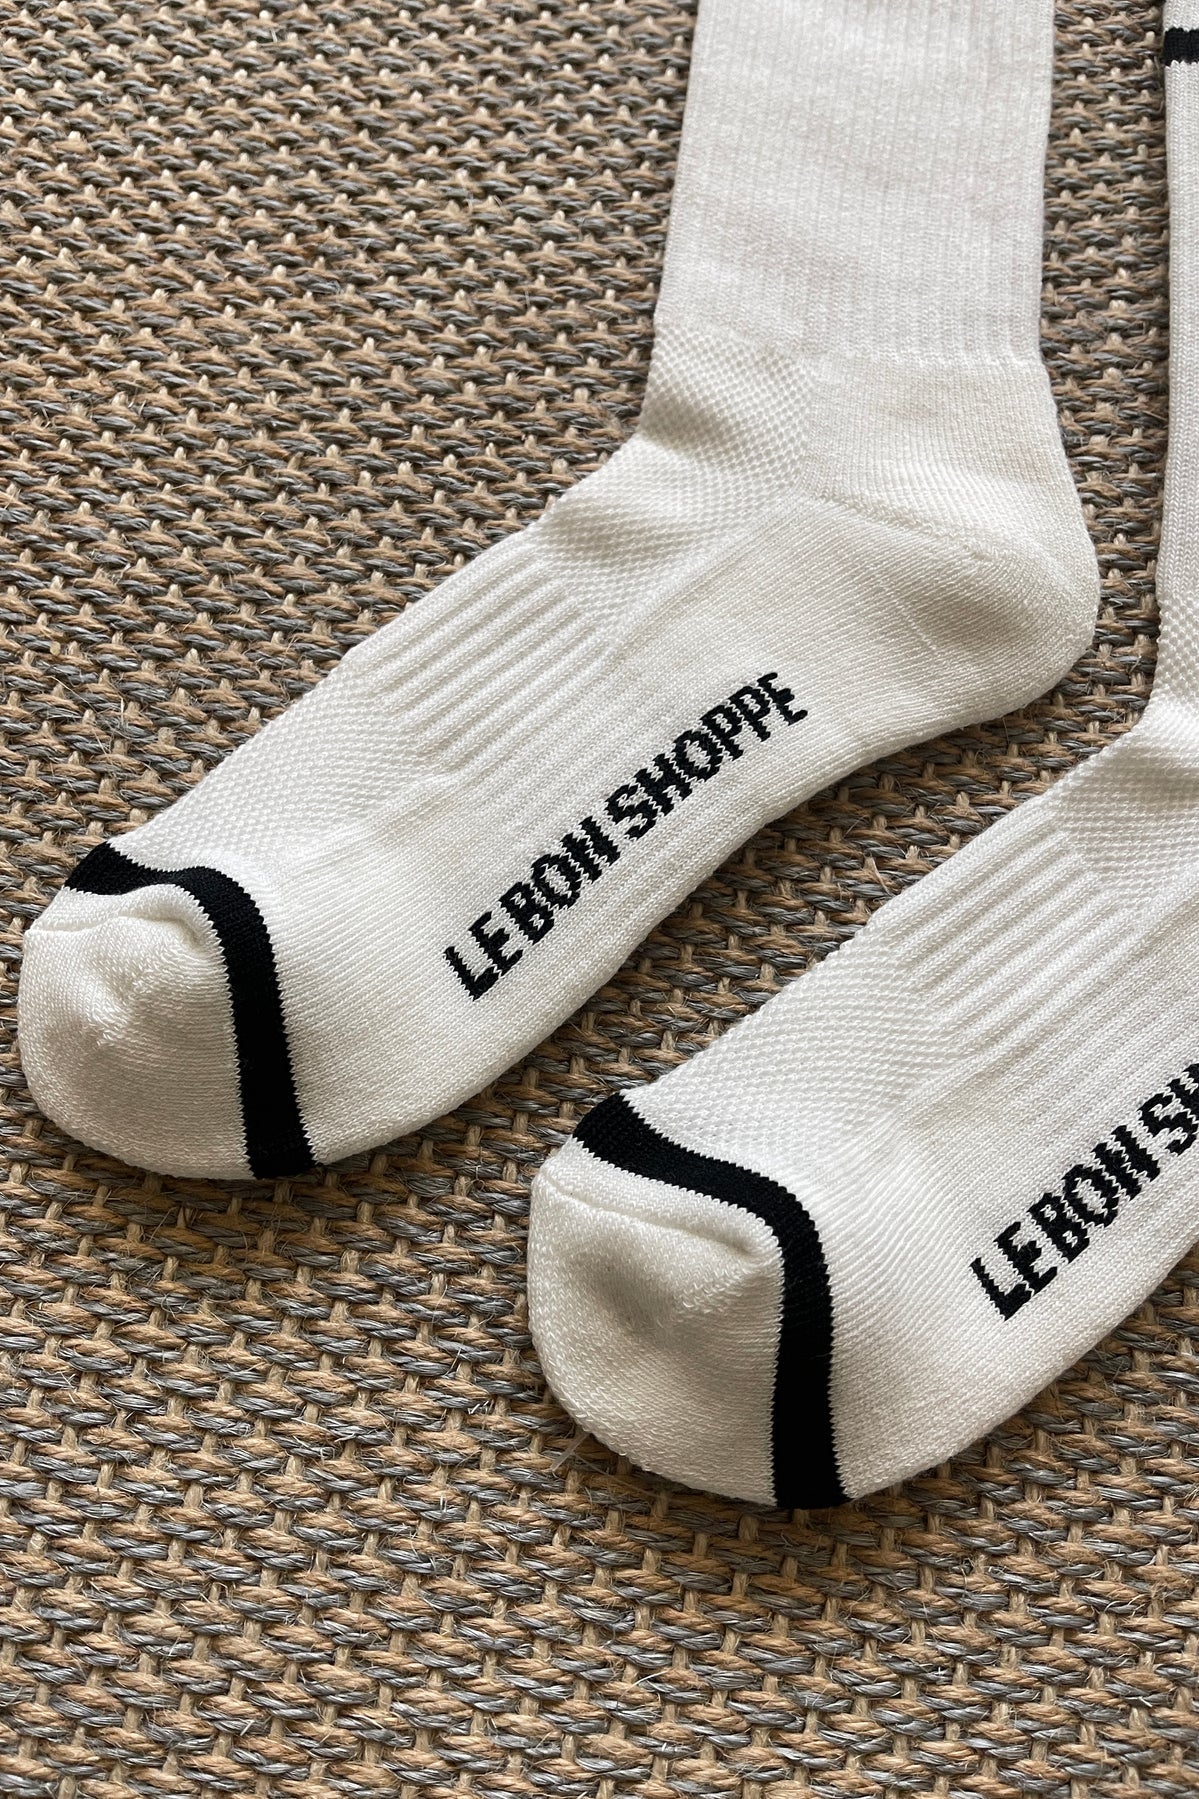 Heliotique | Le Bon Shoppe Extended Boyfriend Socks - Classic White